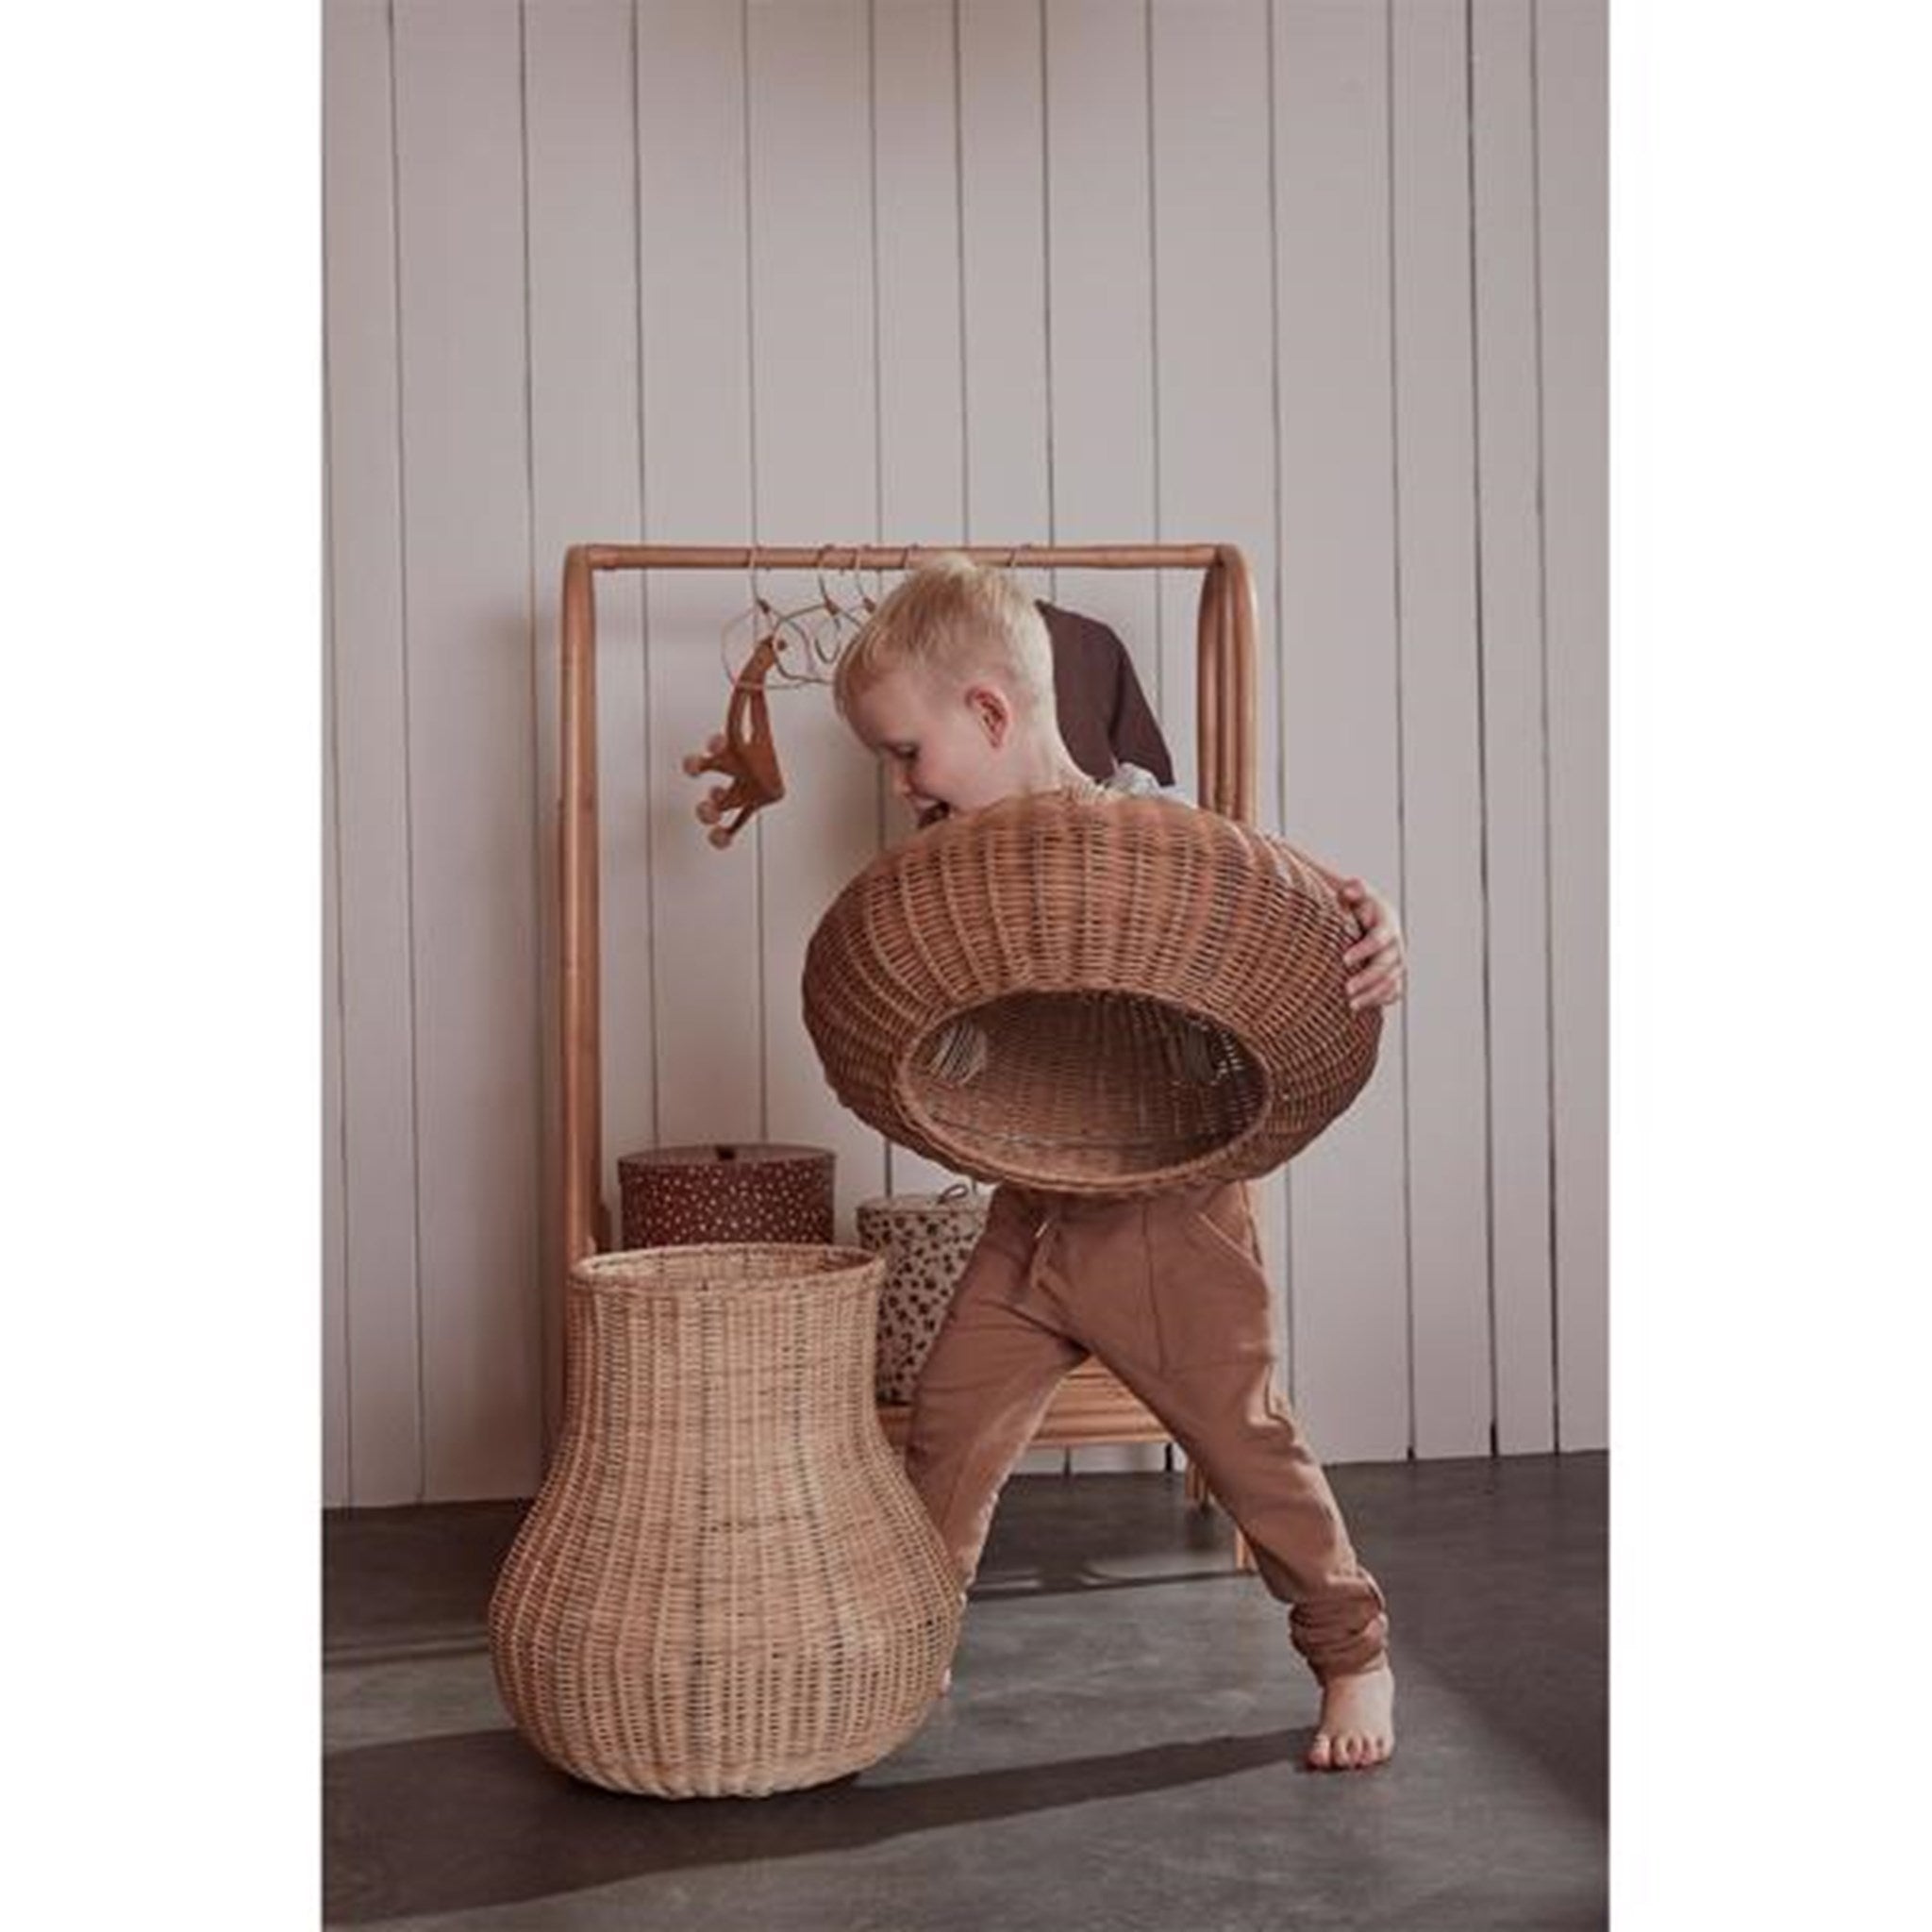 "OYOY Sponge Woven Basket - 在您的家中创造有序之美 4